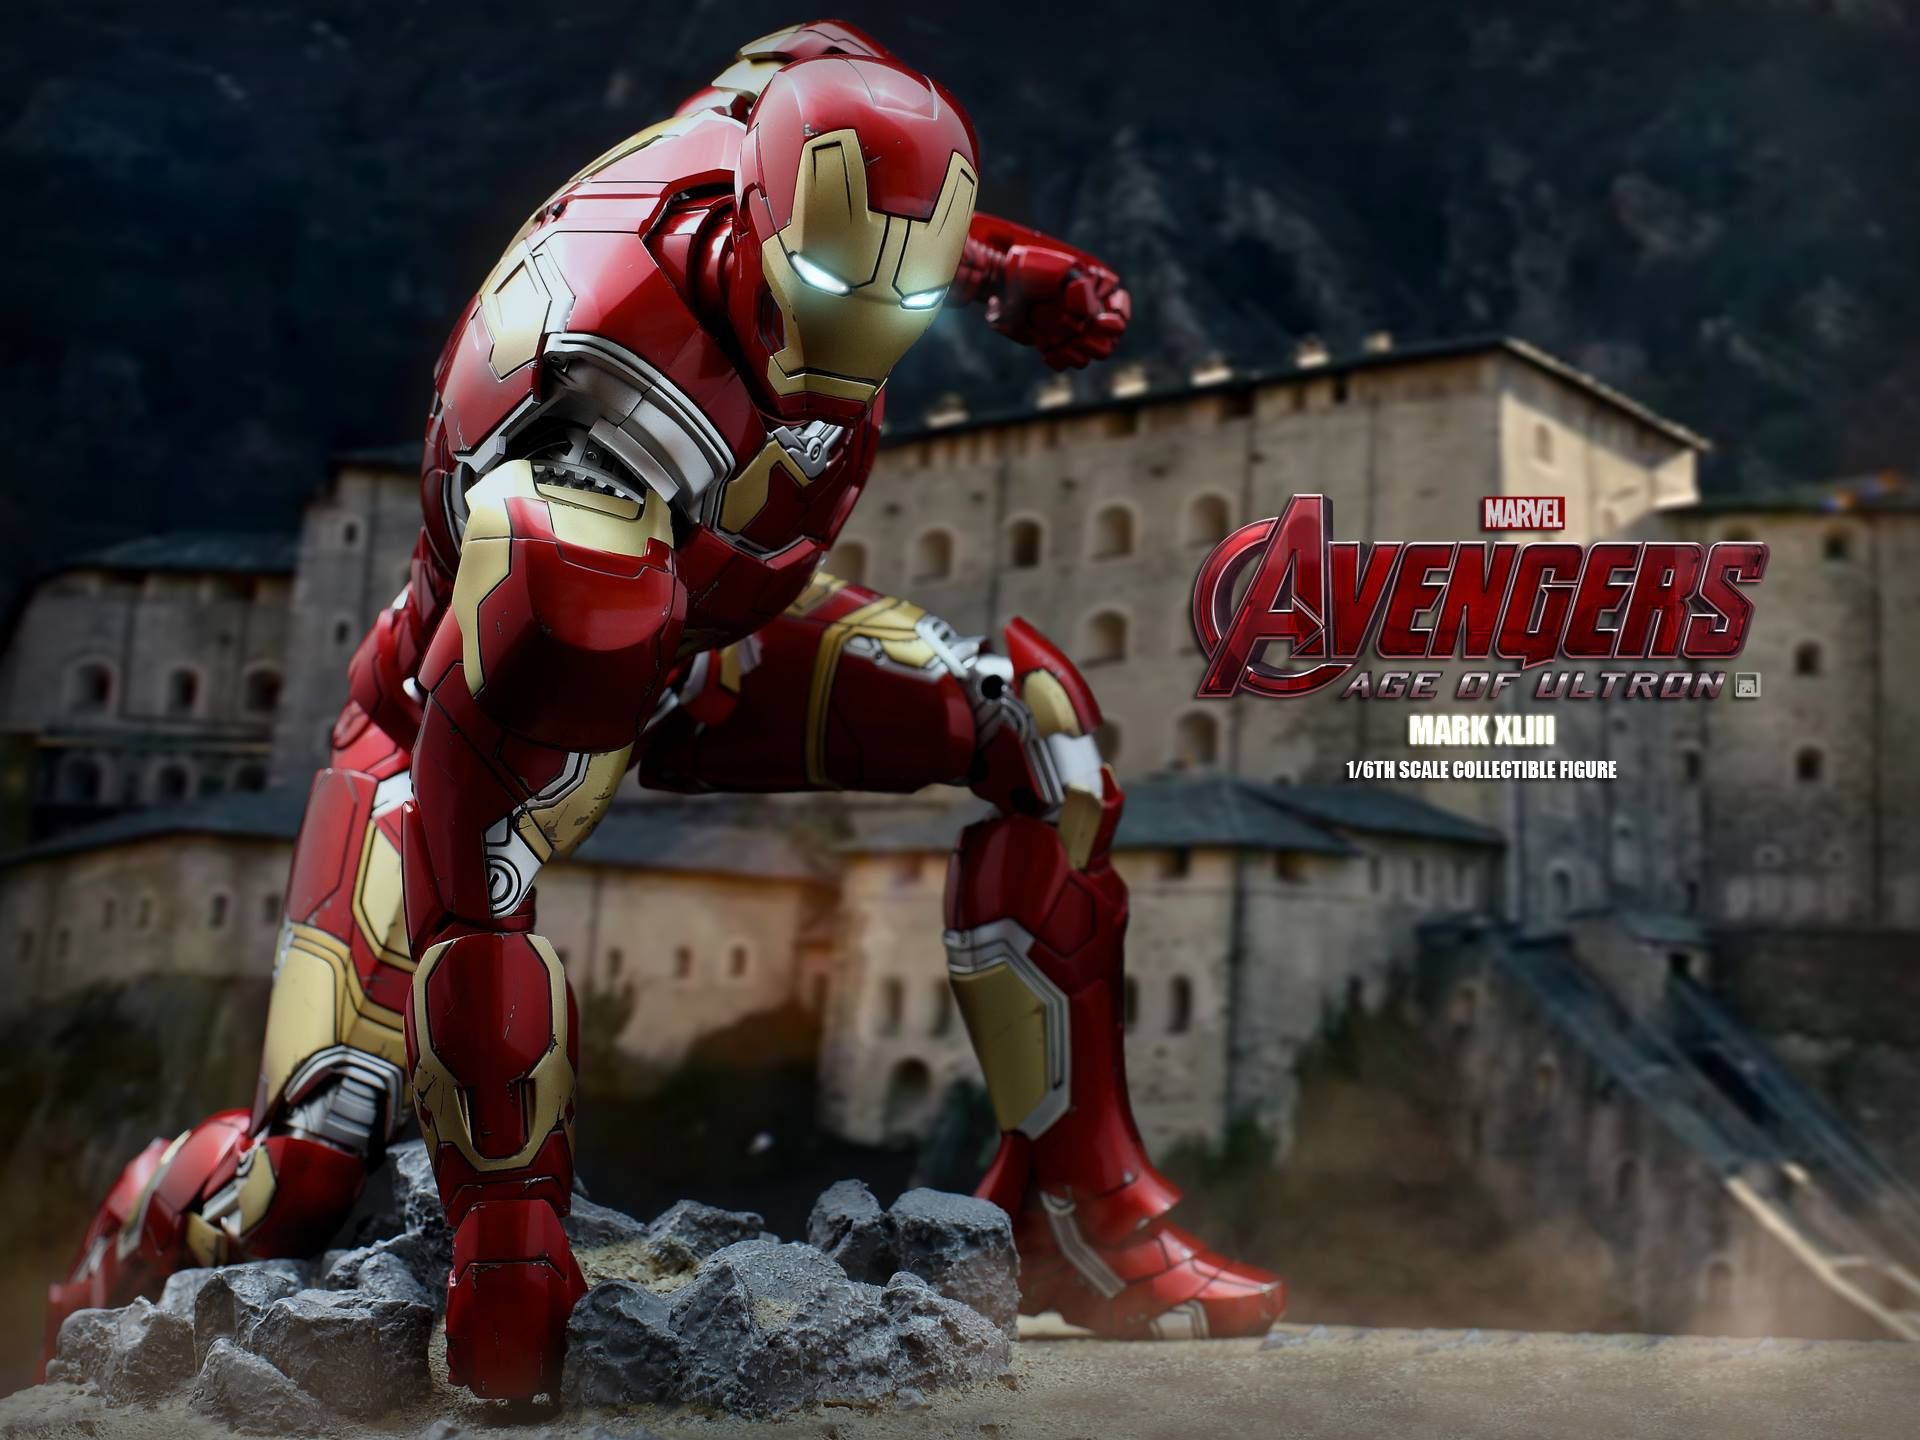 Avengers 2 Iron Man Mark XLIII Action Figure Photo 10